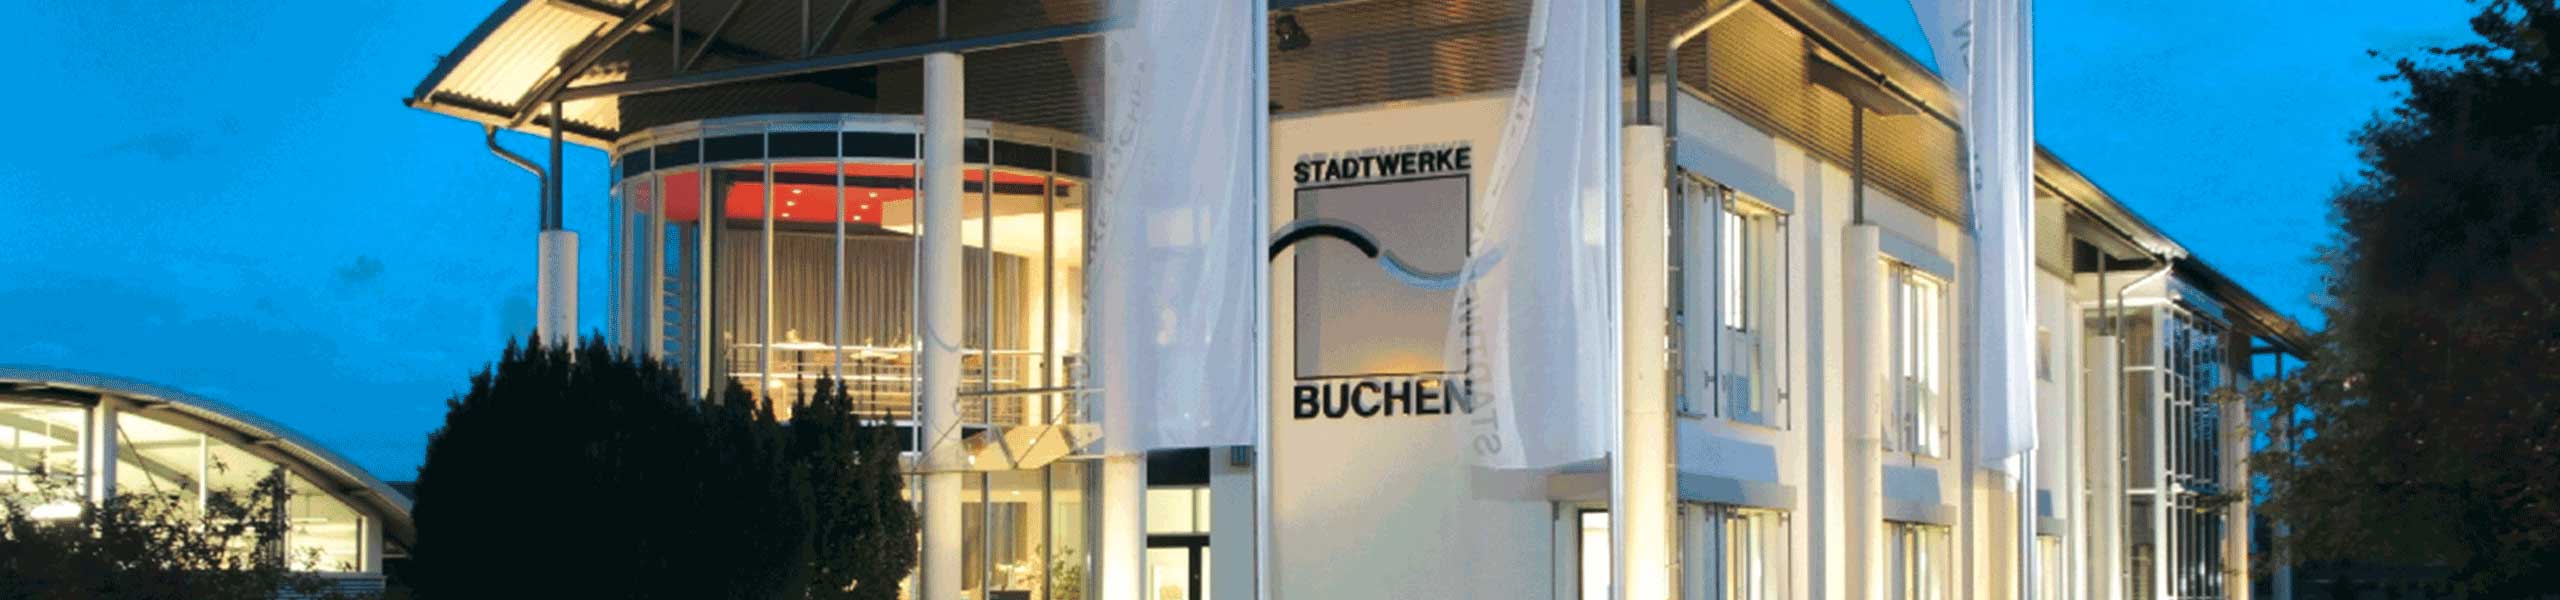 Stadtwerke Buchen GmbH & Co KG - Information zur aktuellen Gaspreisentwicklung